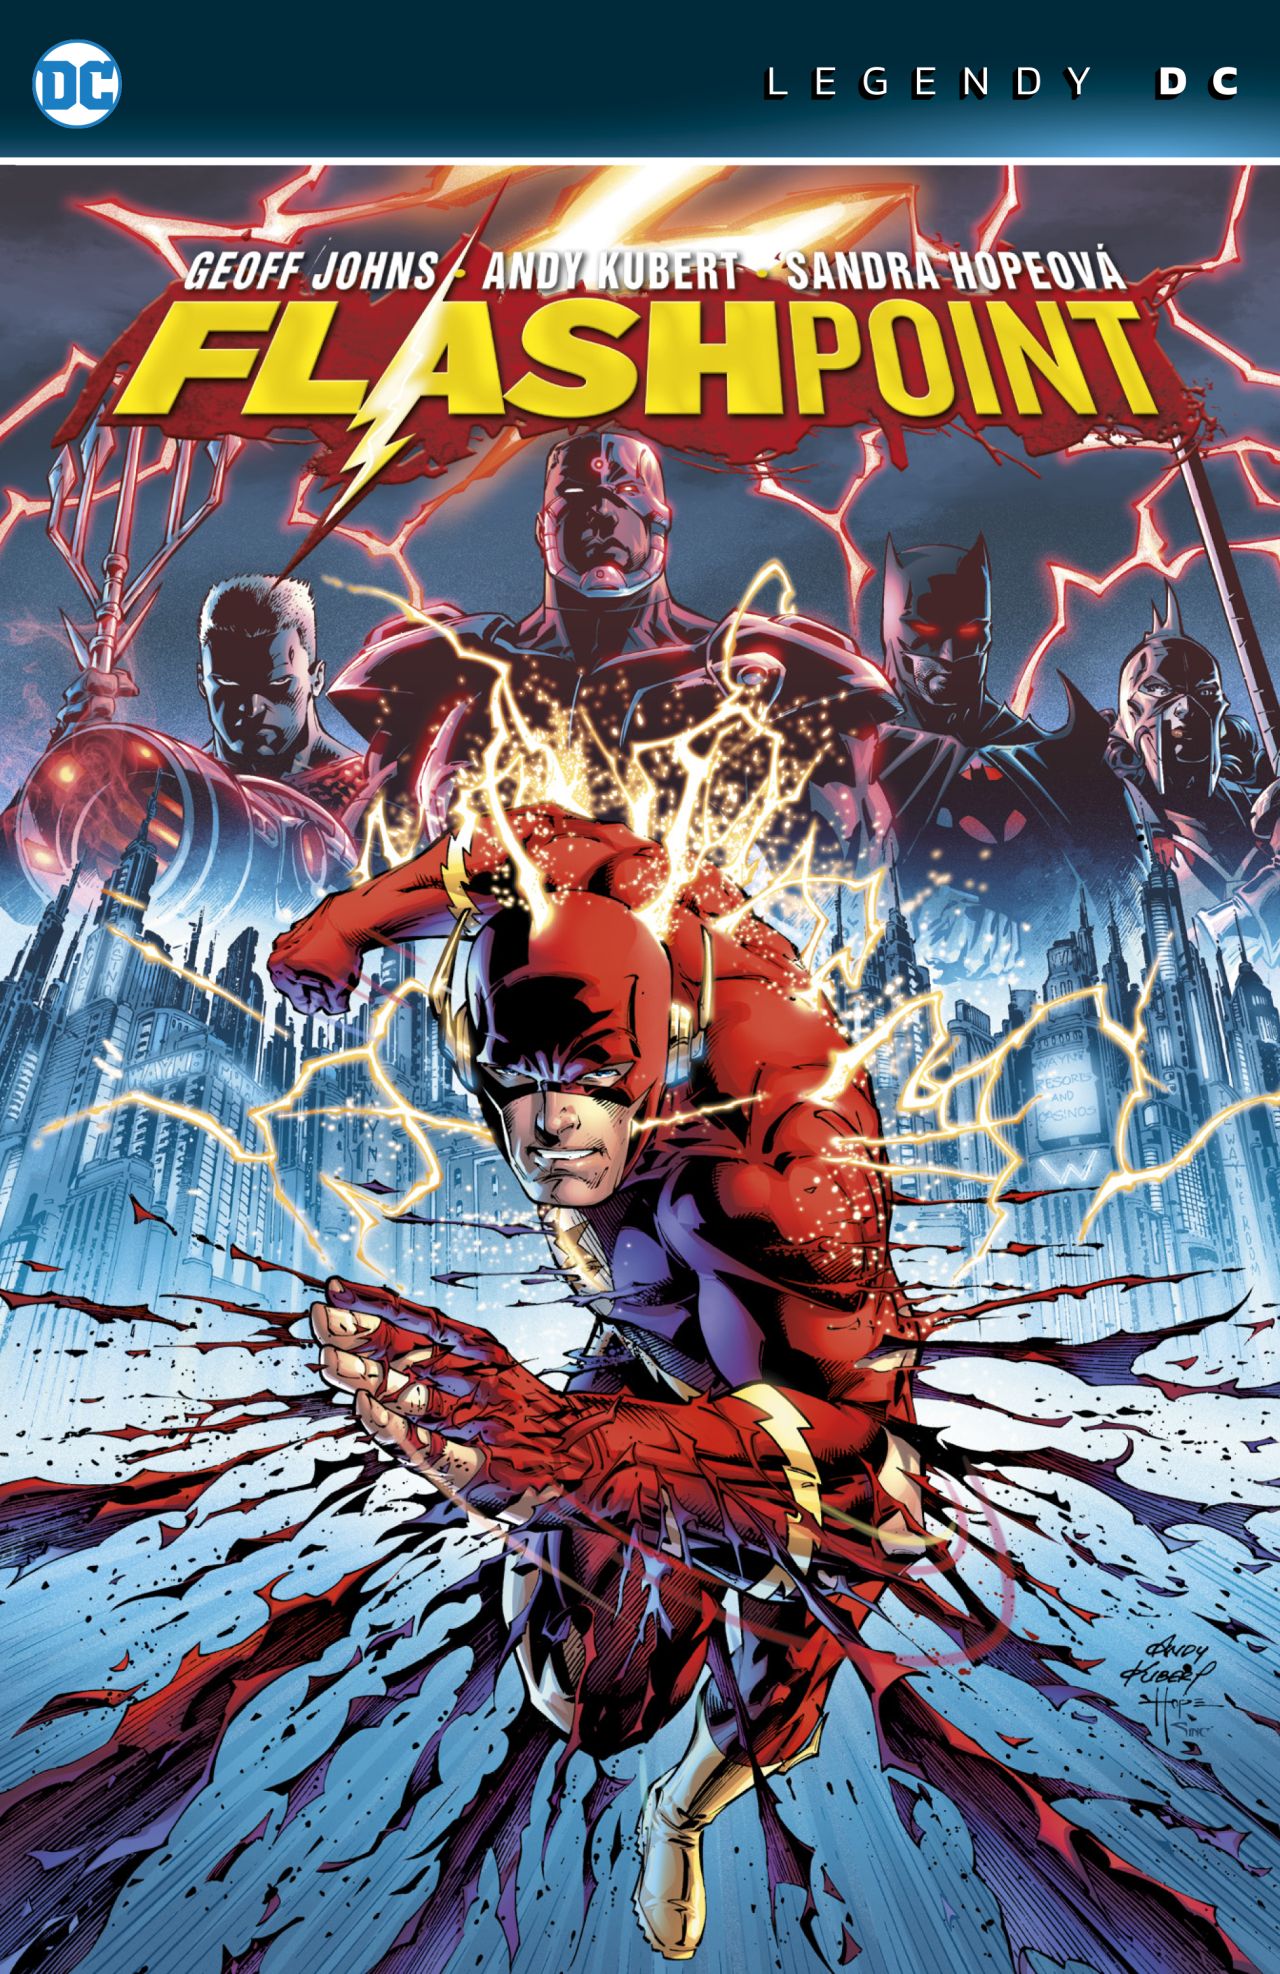 obrázek k novince - Flashpoint (Legendy DC)